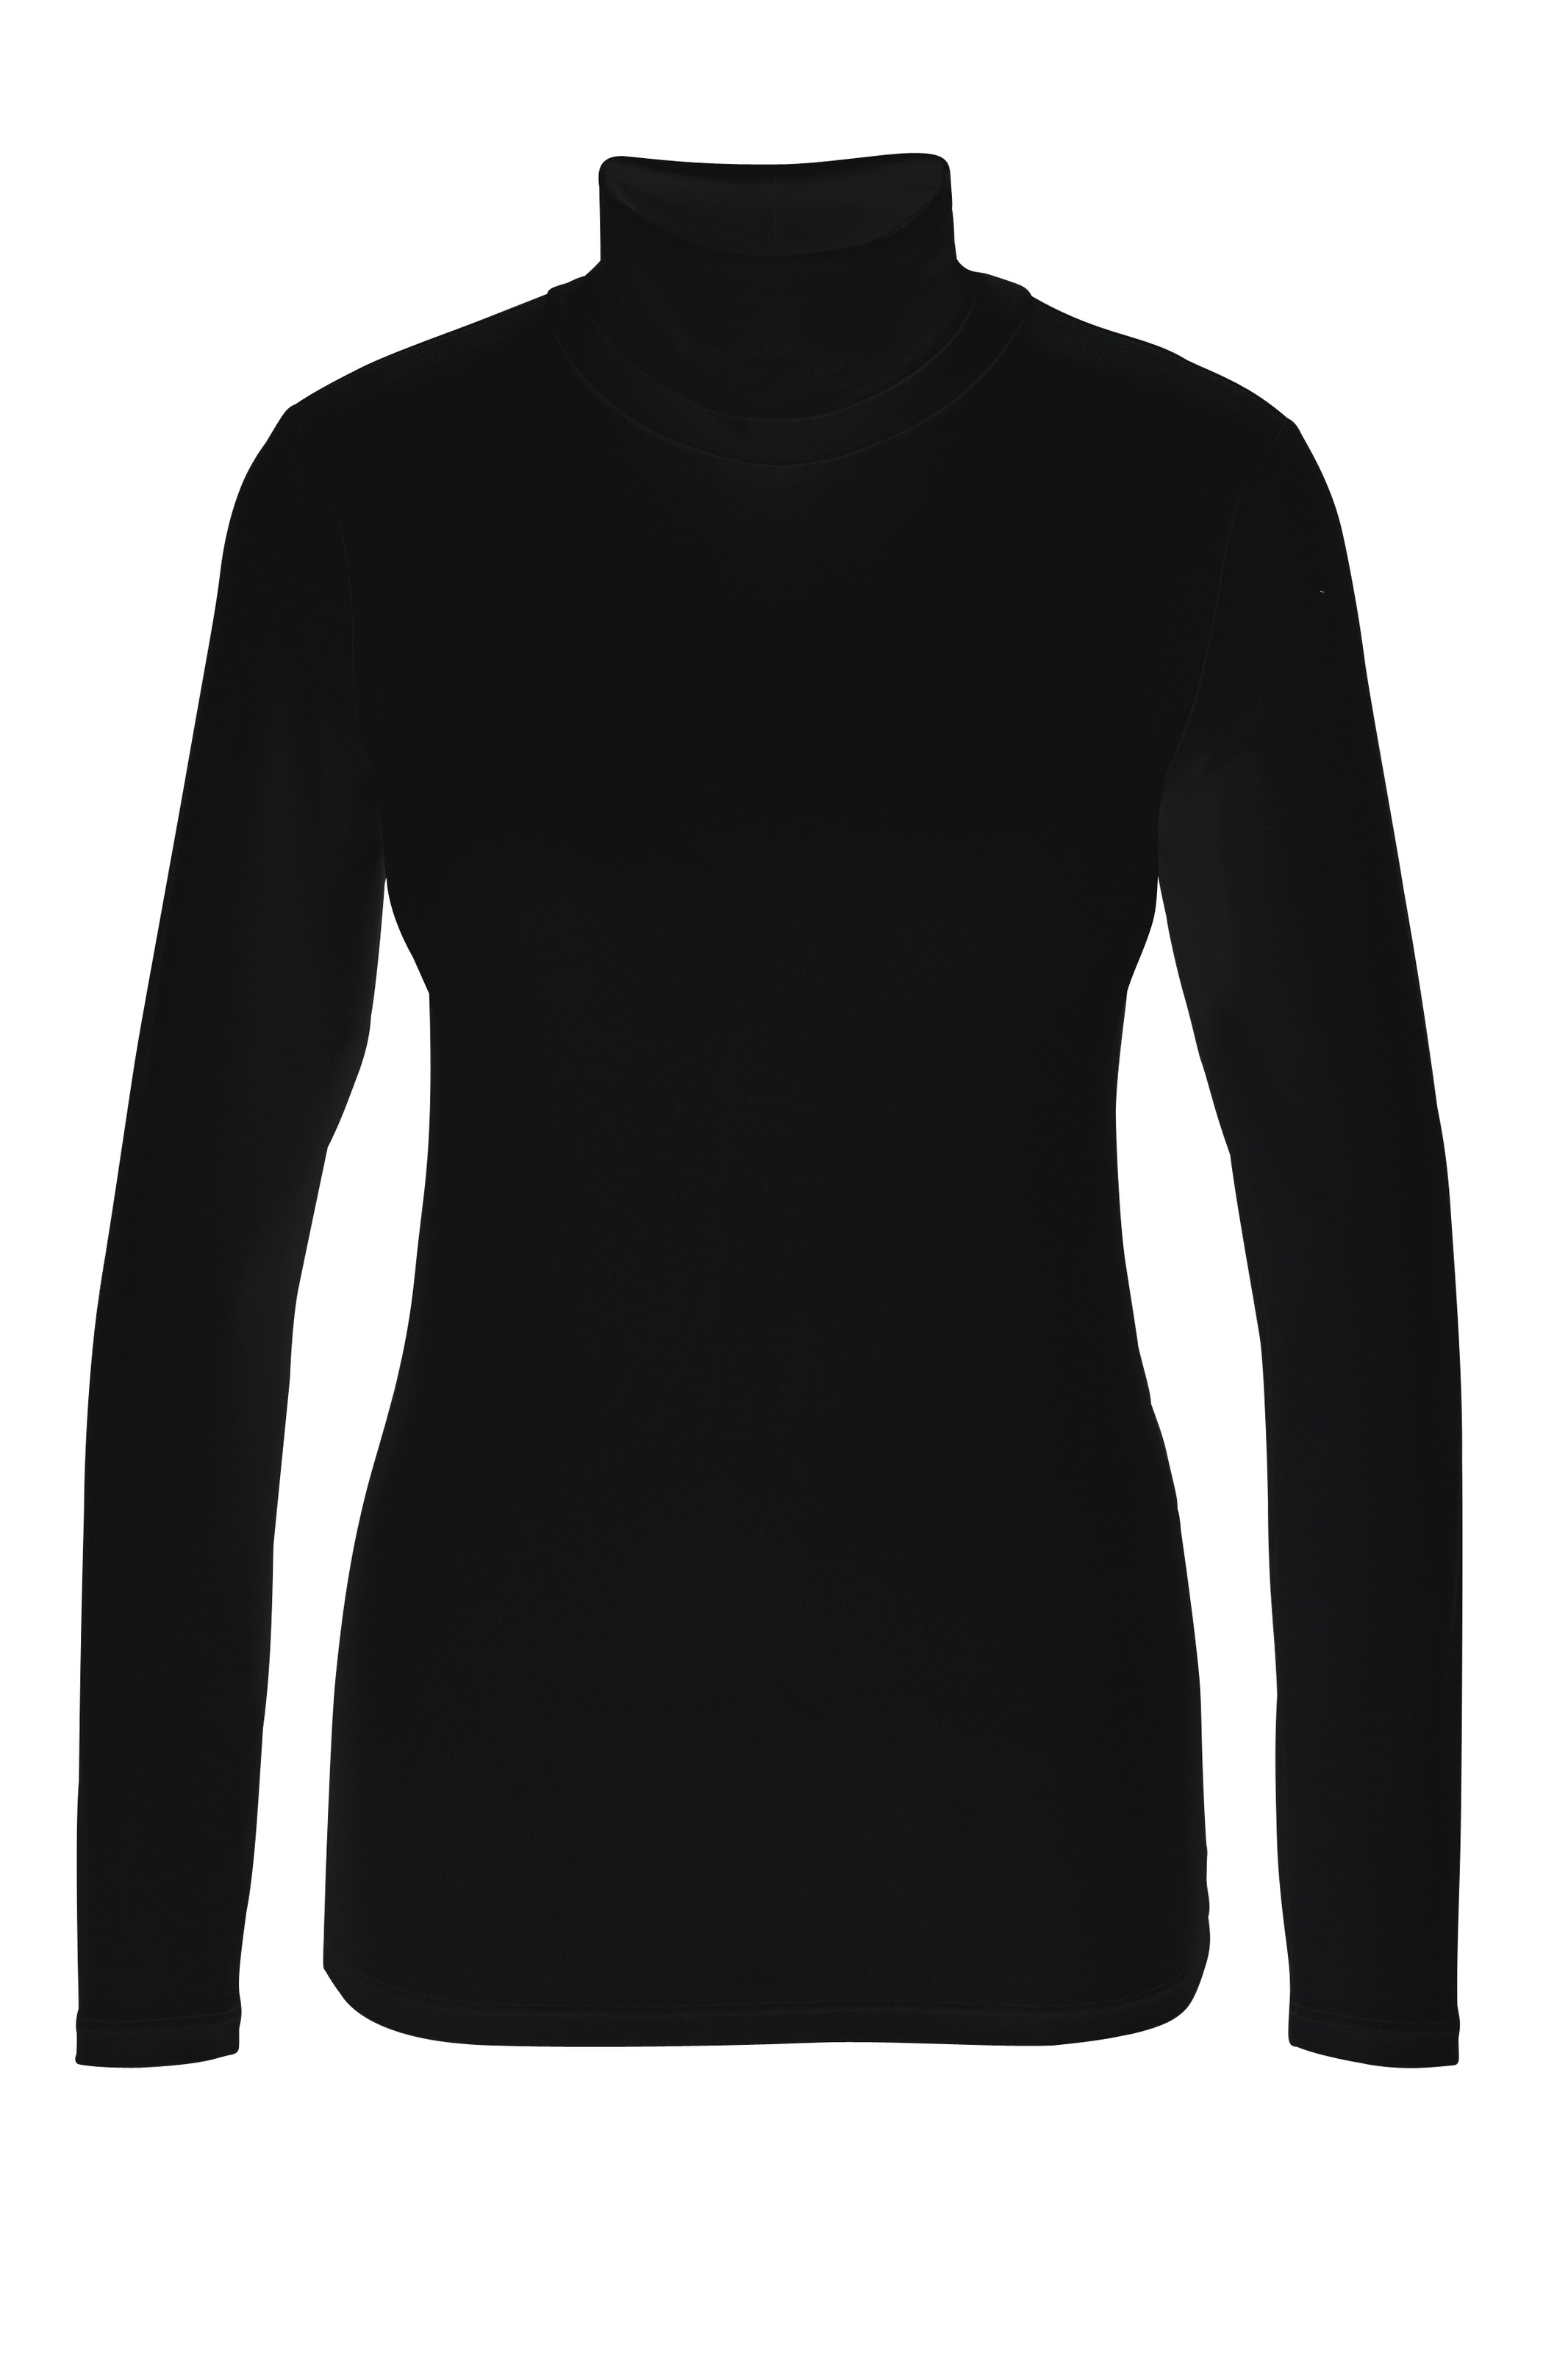 Aniston CASUAL Rollkragenshirt, in schwarz-bunt-bedruckt oder 4 trendigen Unis